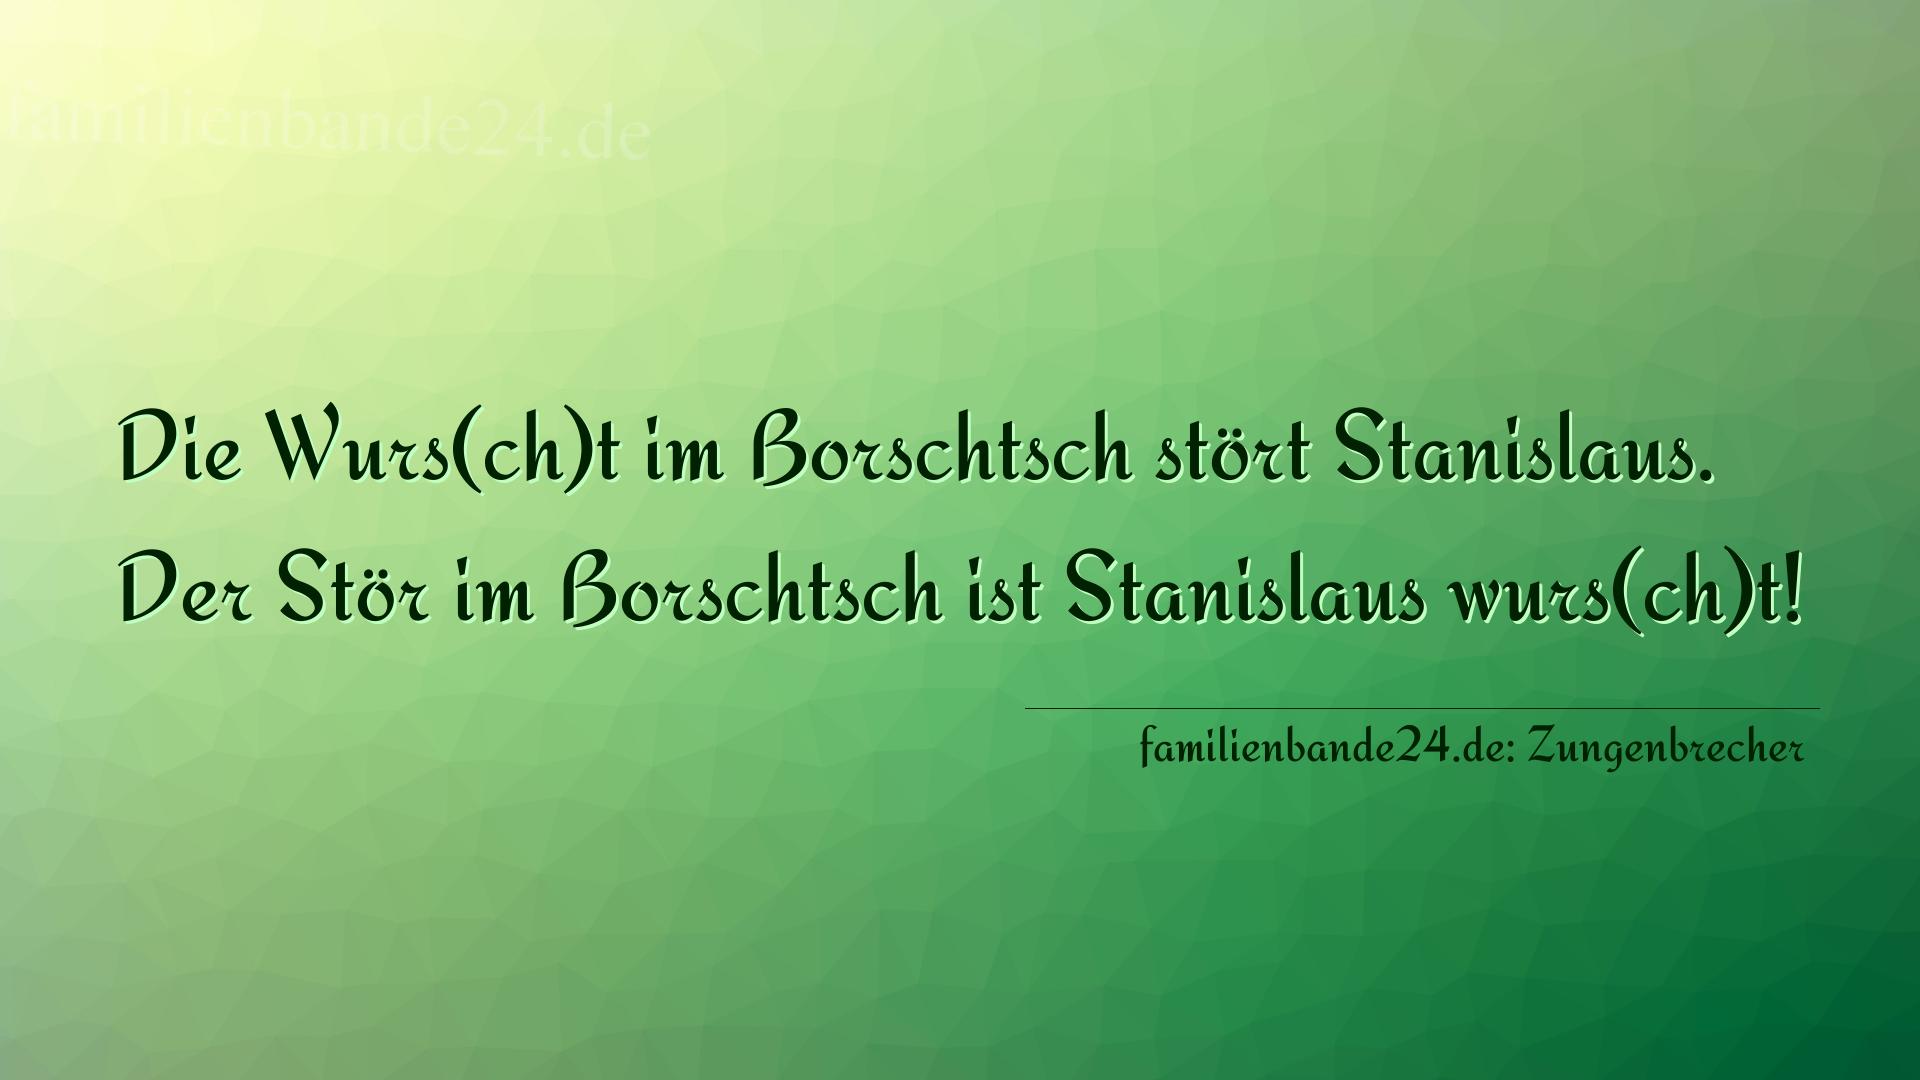 Zungenbrecher Nummer 704: Die Wurs(ch)t im Borschtsch stört Stanislaus. Der Stör i [...]